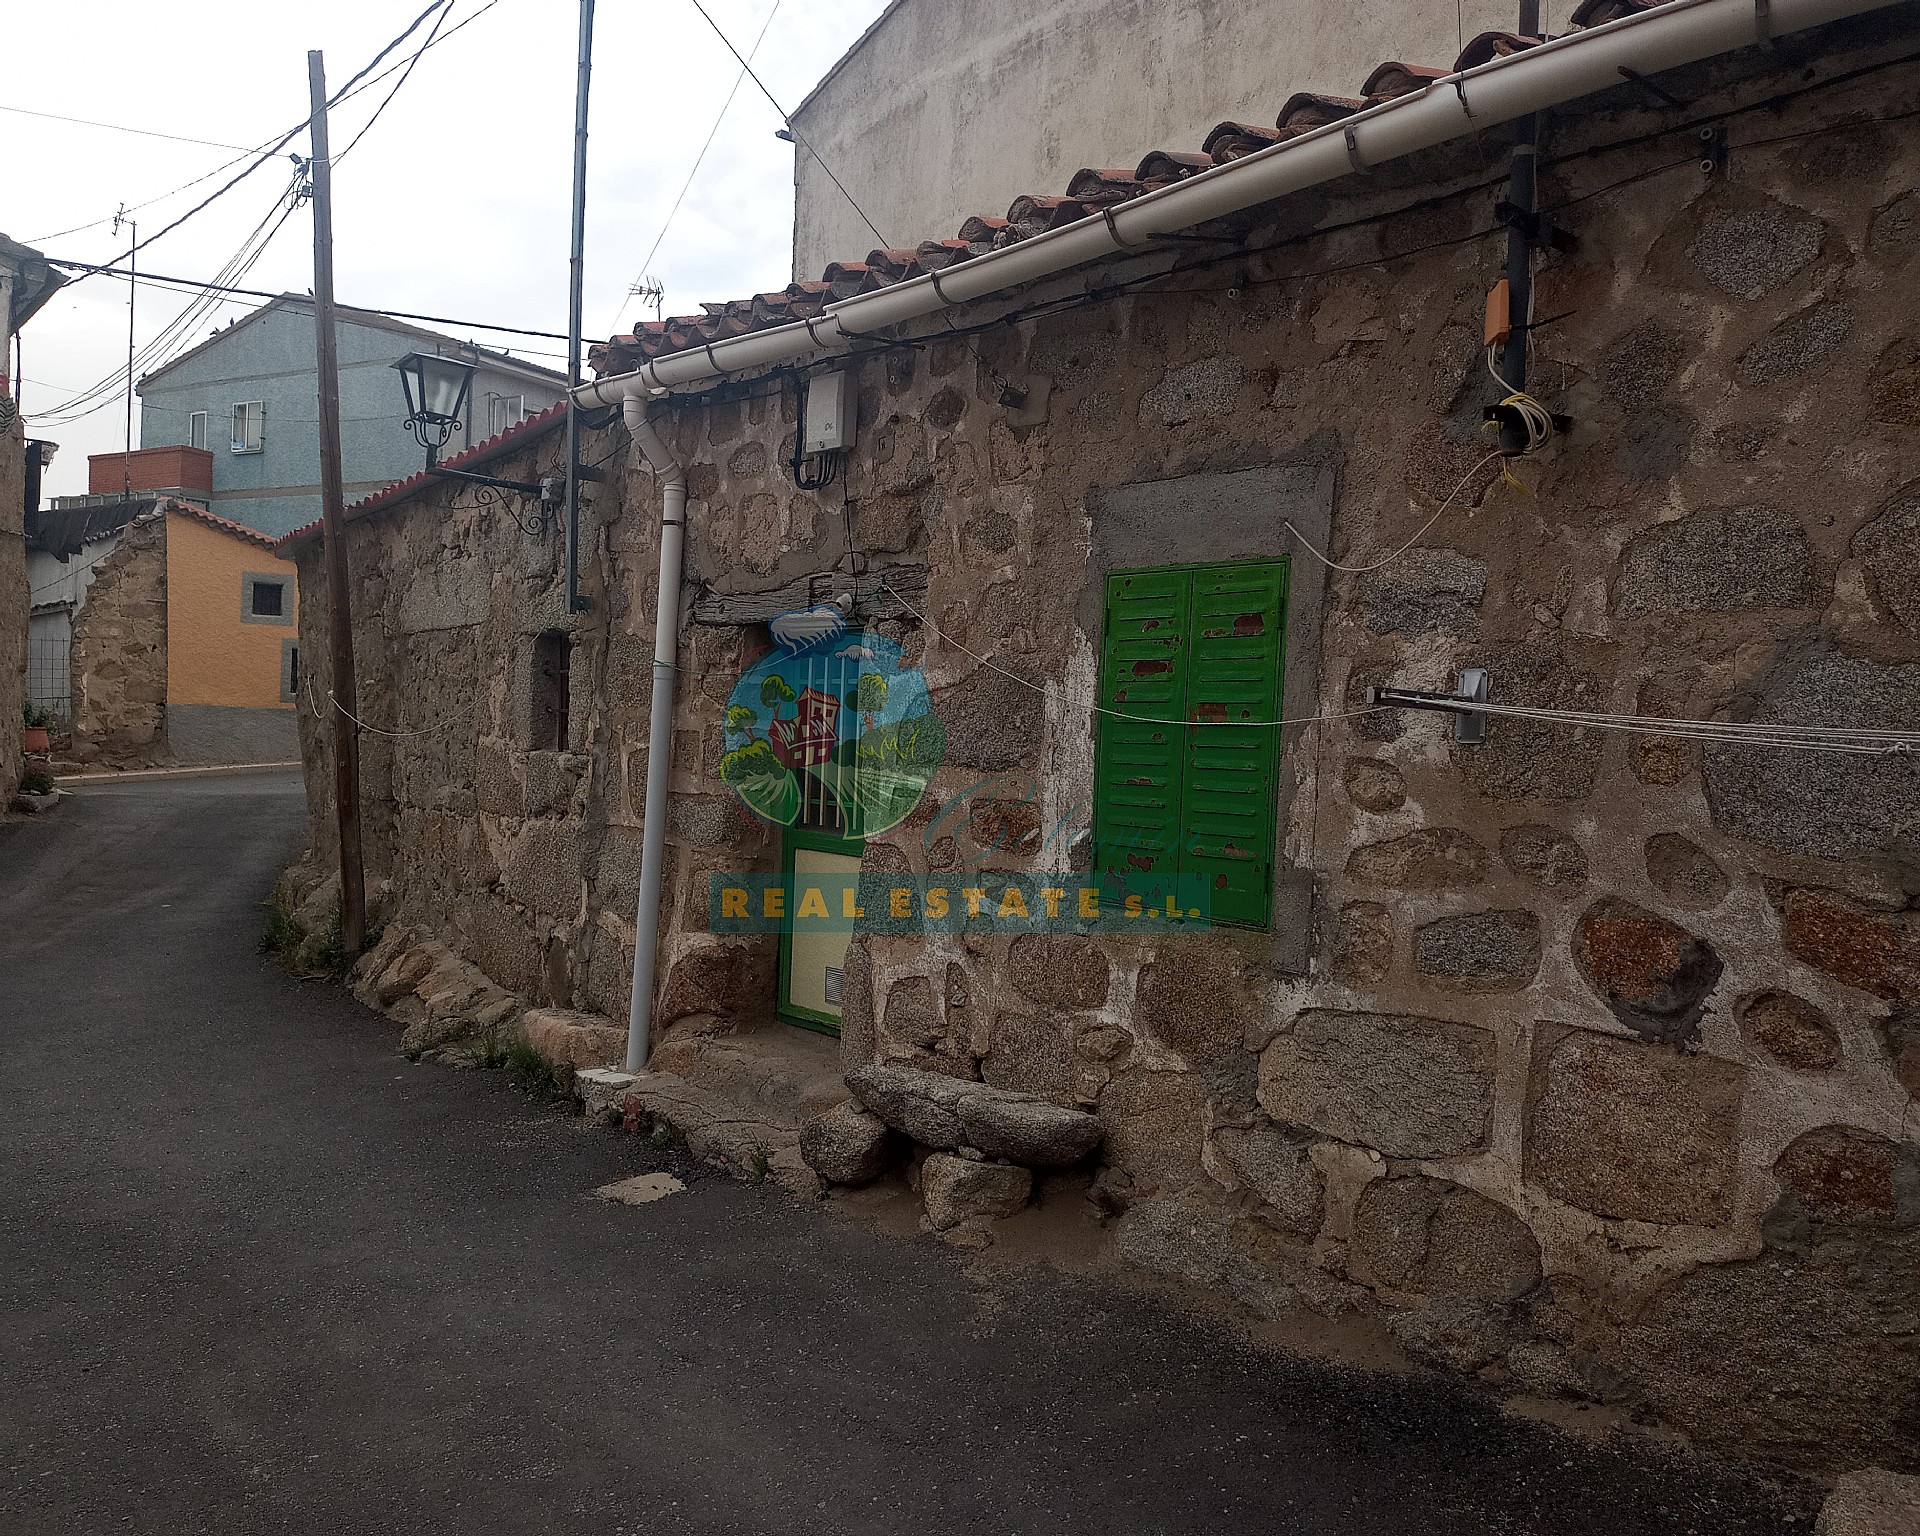 Barn for rehabilitation in Sierra de Gredos.